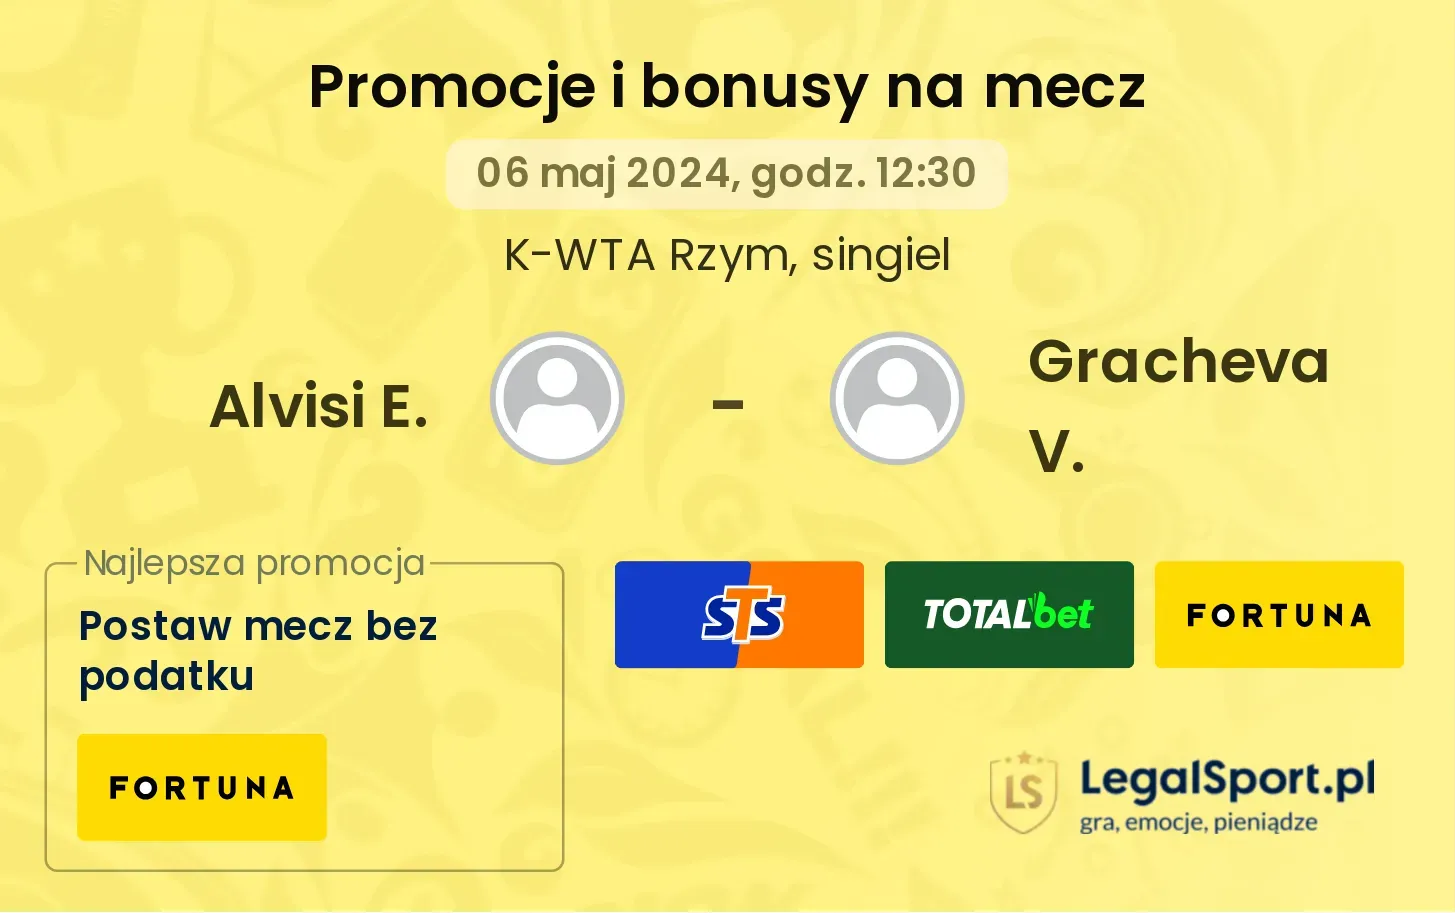 Alvisi E. - Gracheva V. promocje bonusy na mecz